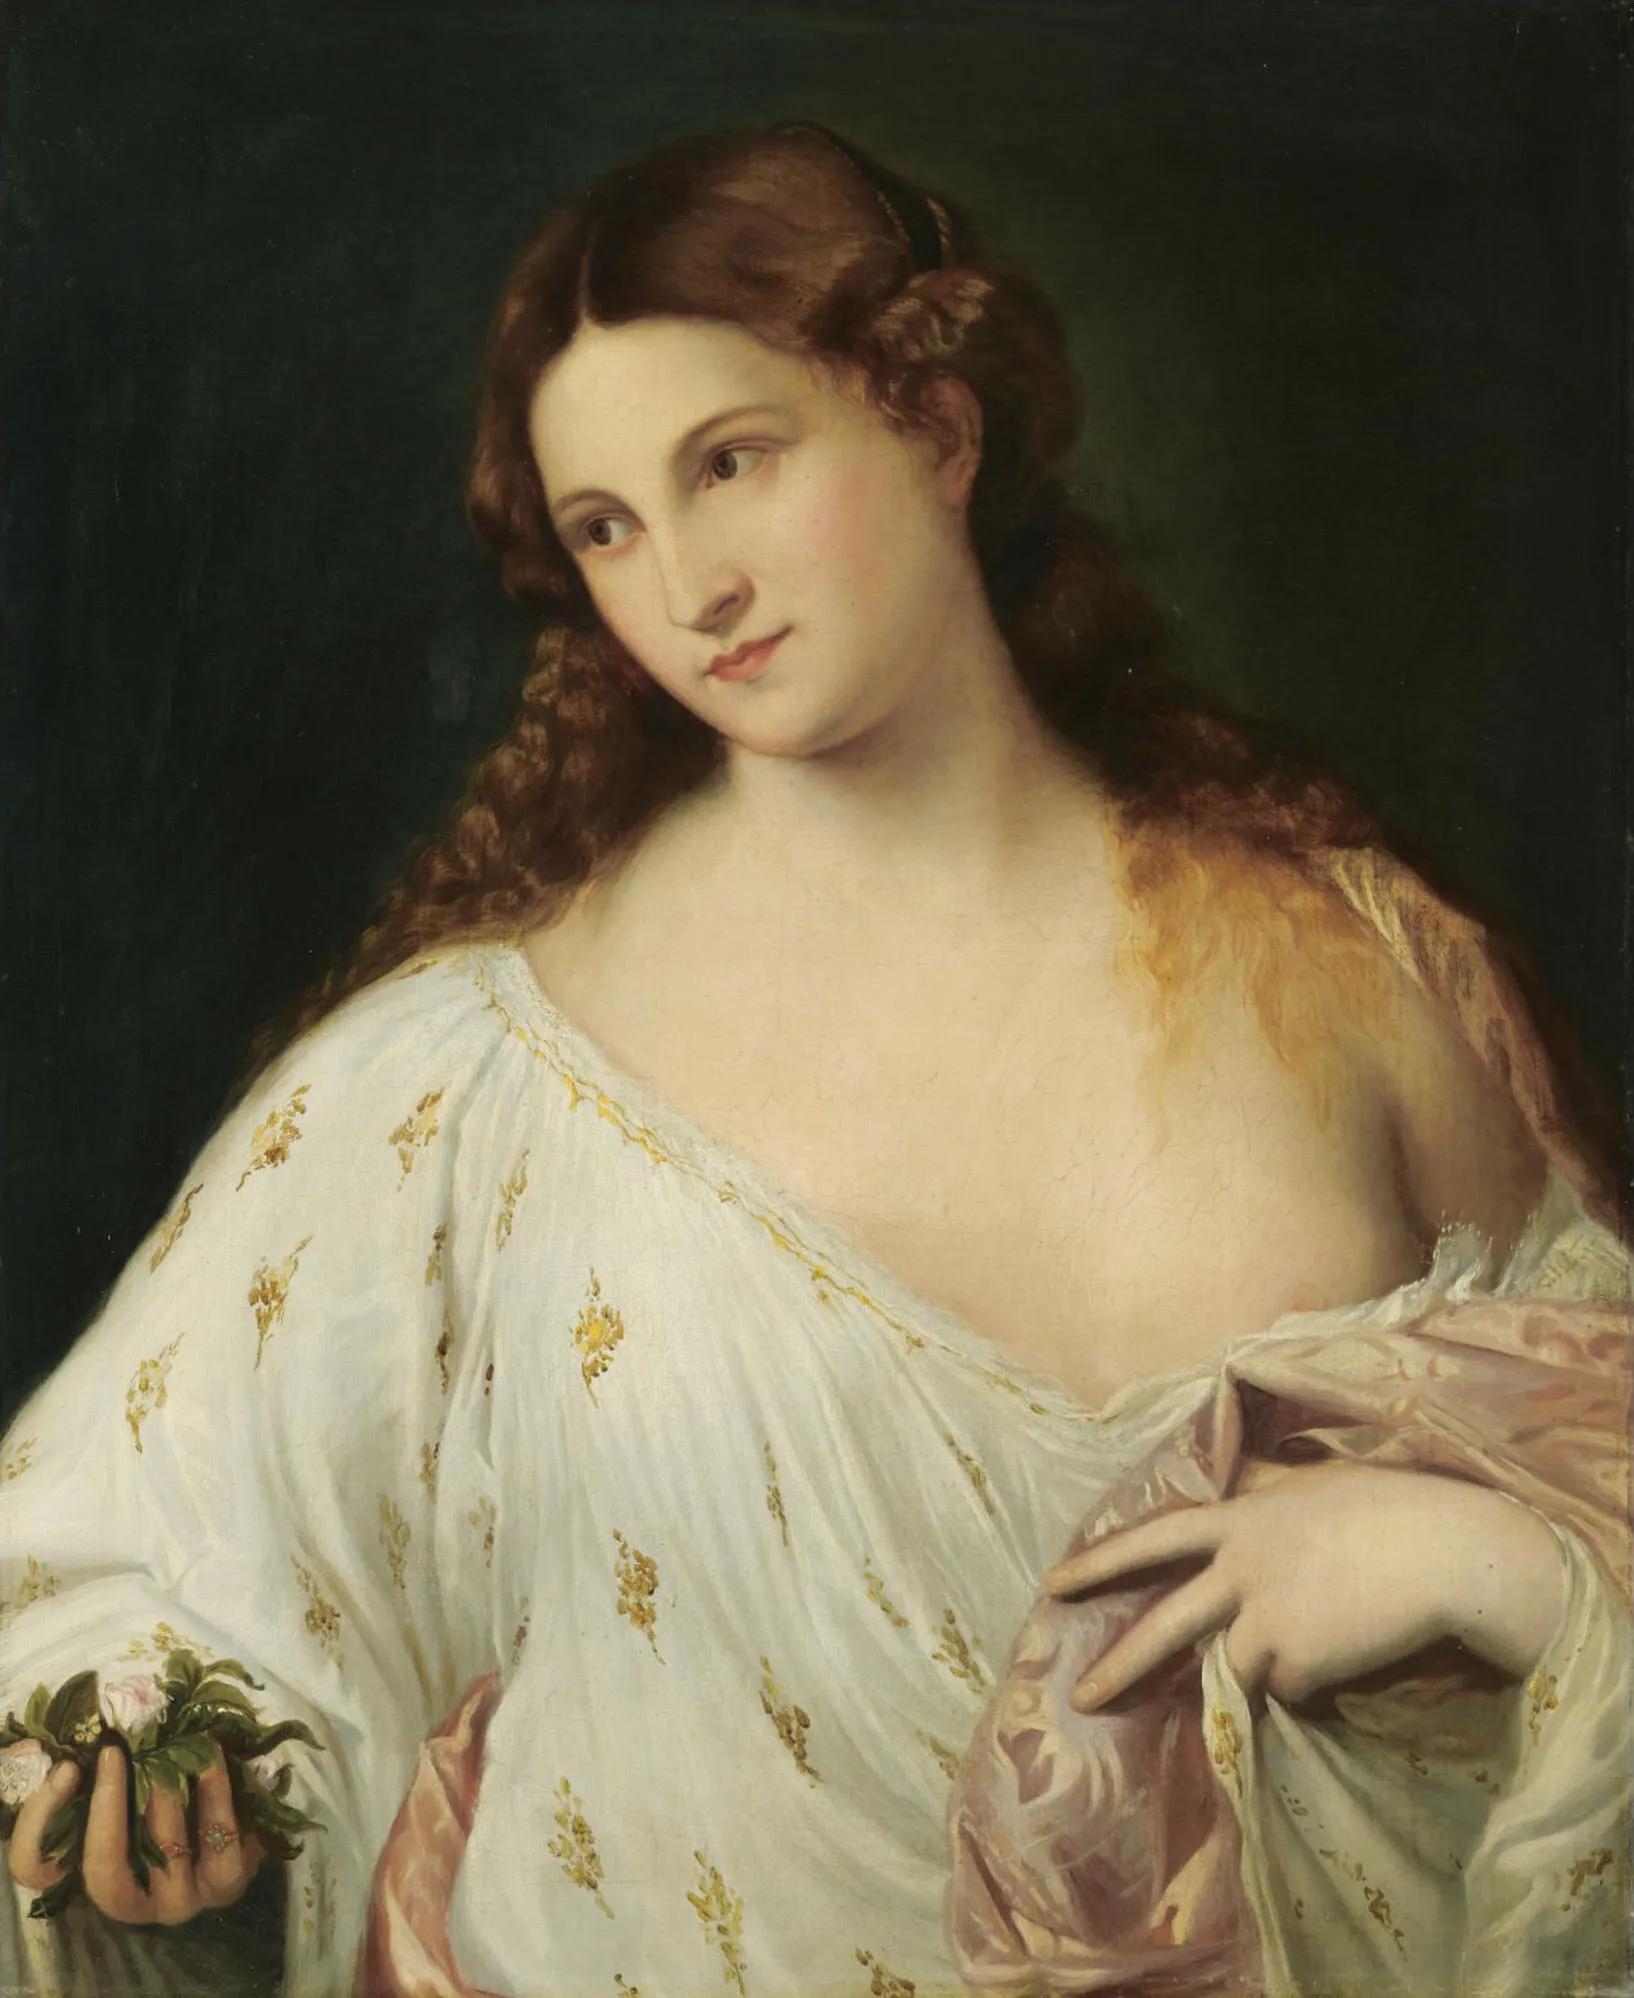 如何欣赏意大利画家提香的名画《酒神与阿里阿德涅》？